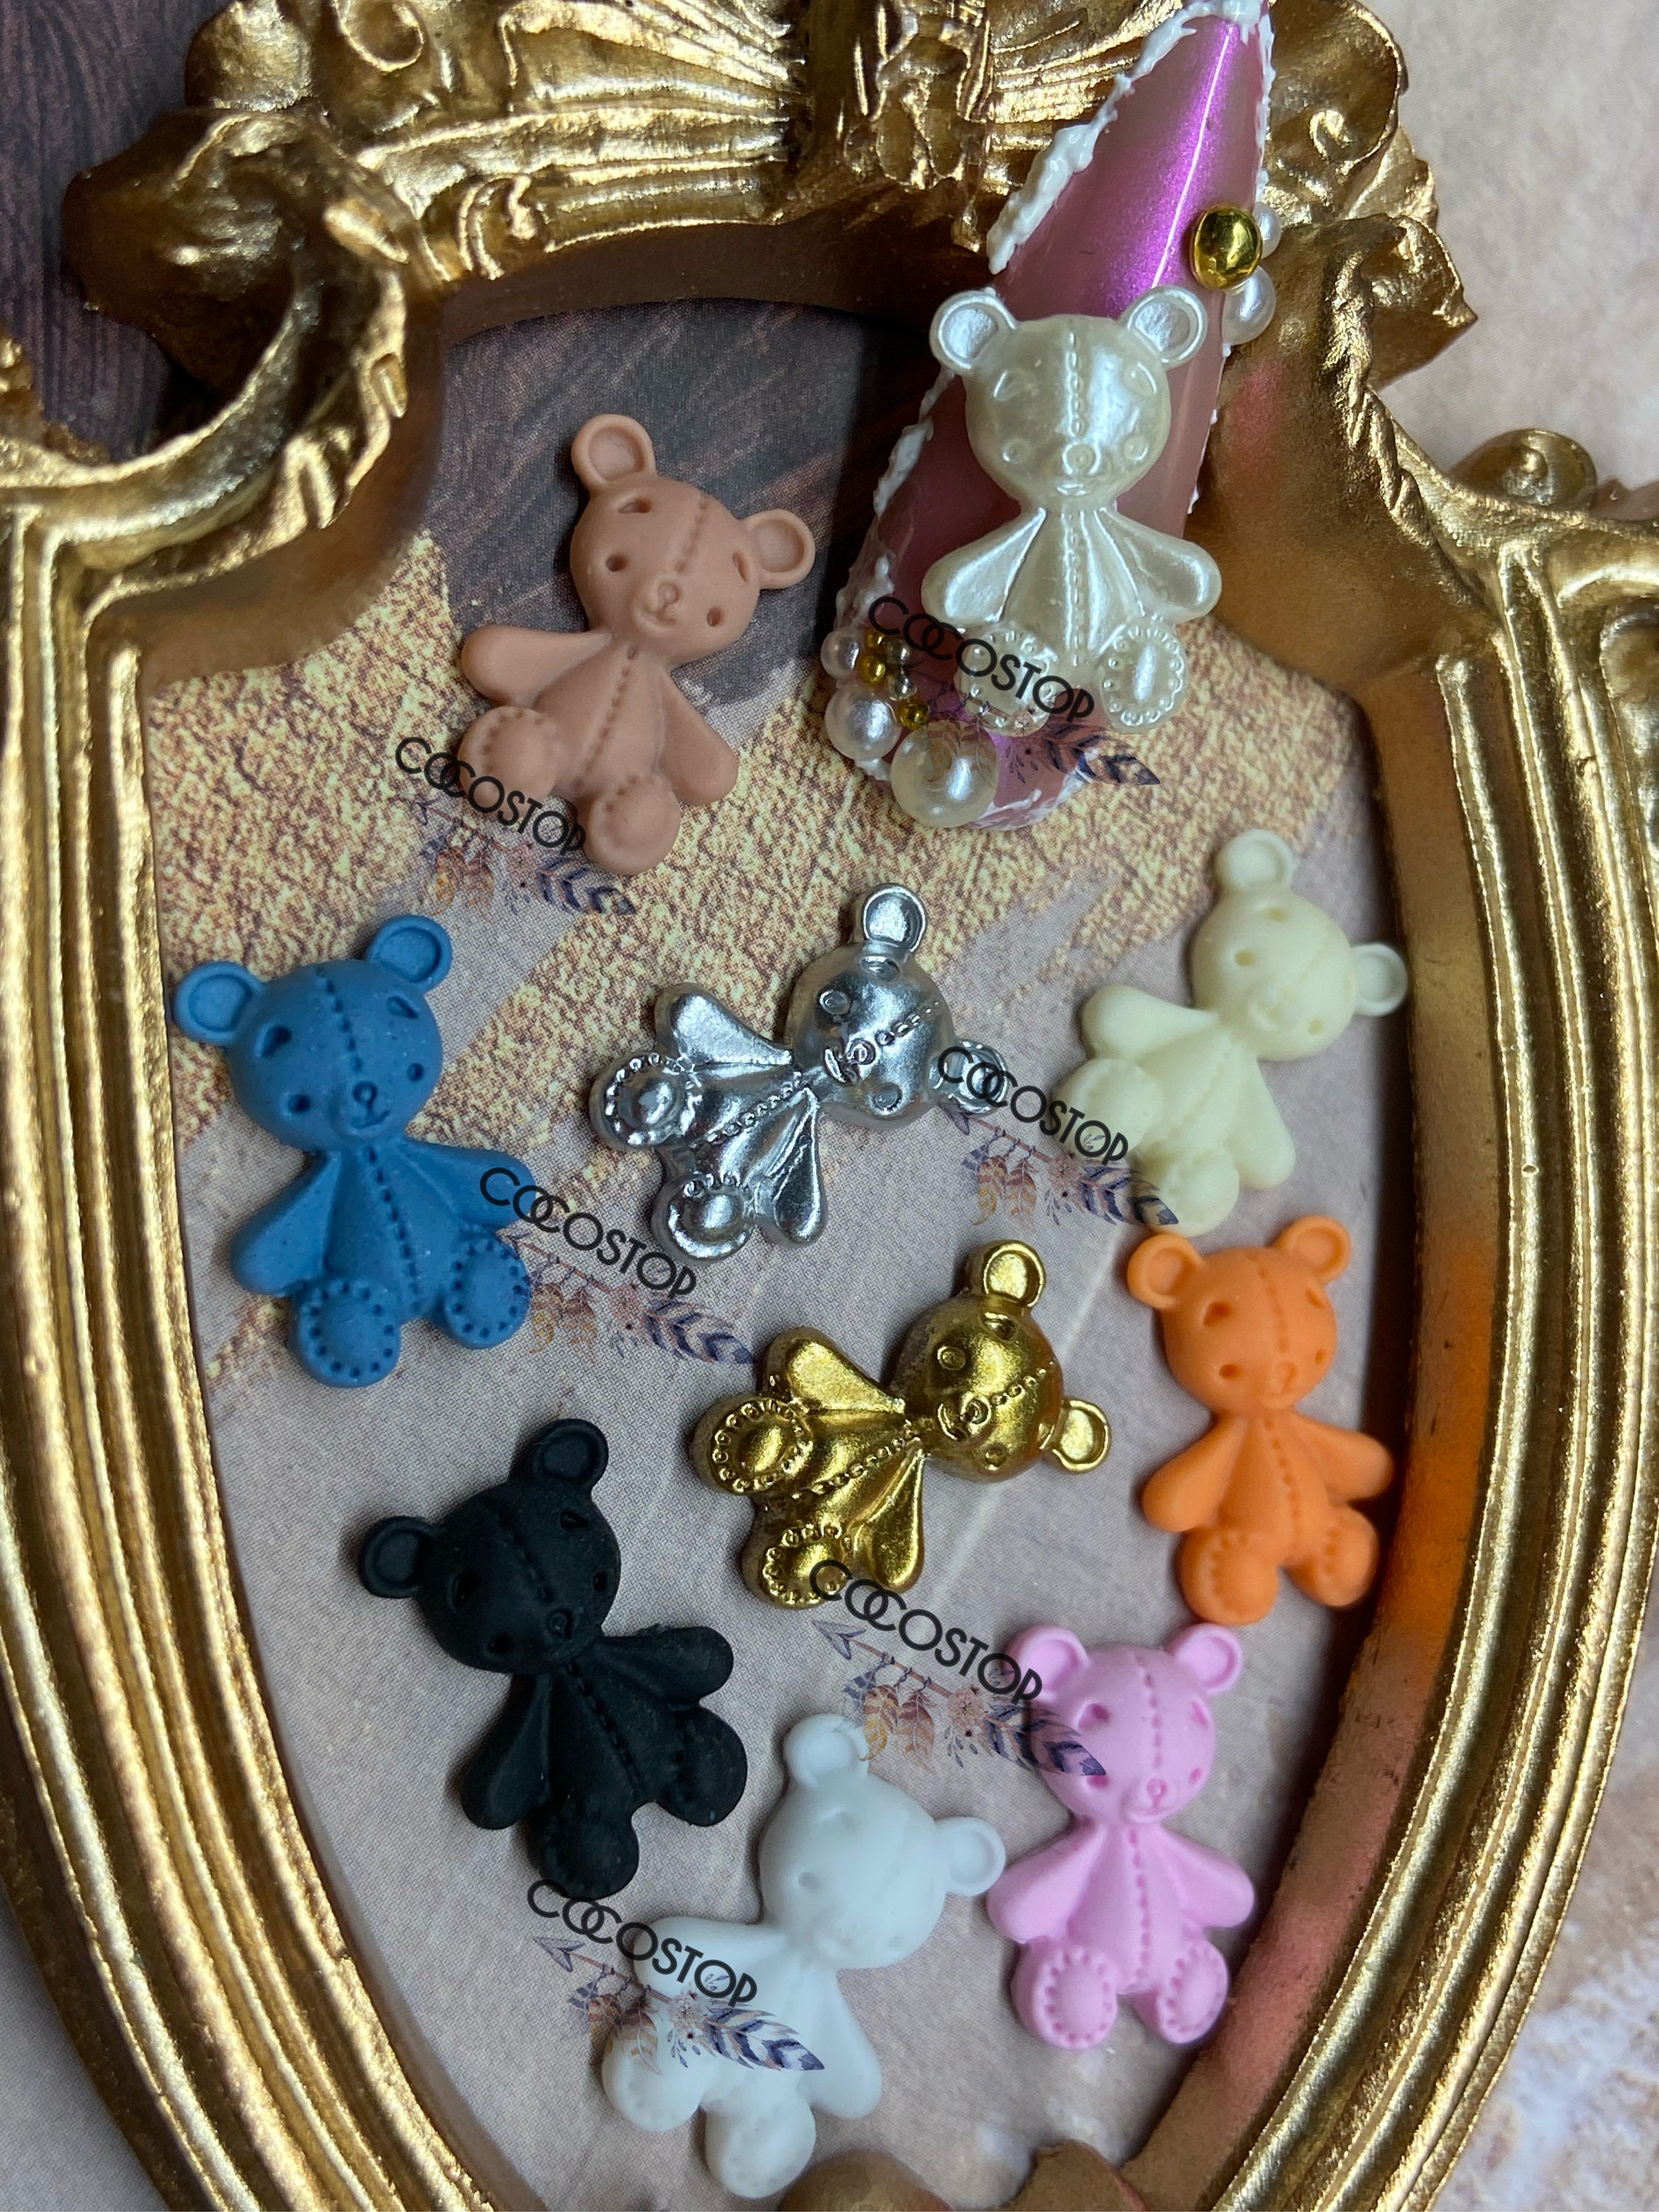 chcuteild bulk assorted cartoon gummy bear nail charms pendants